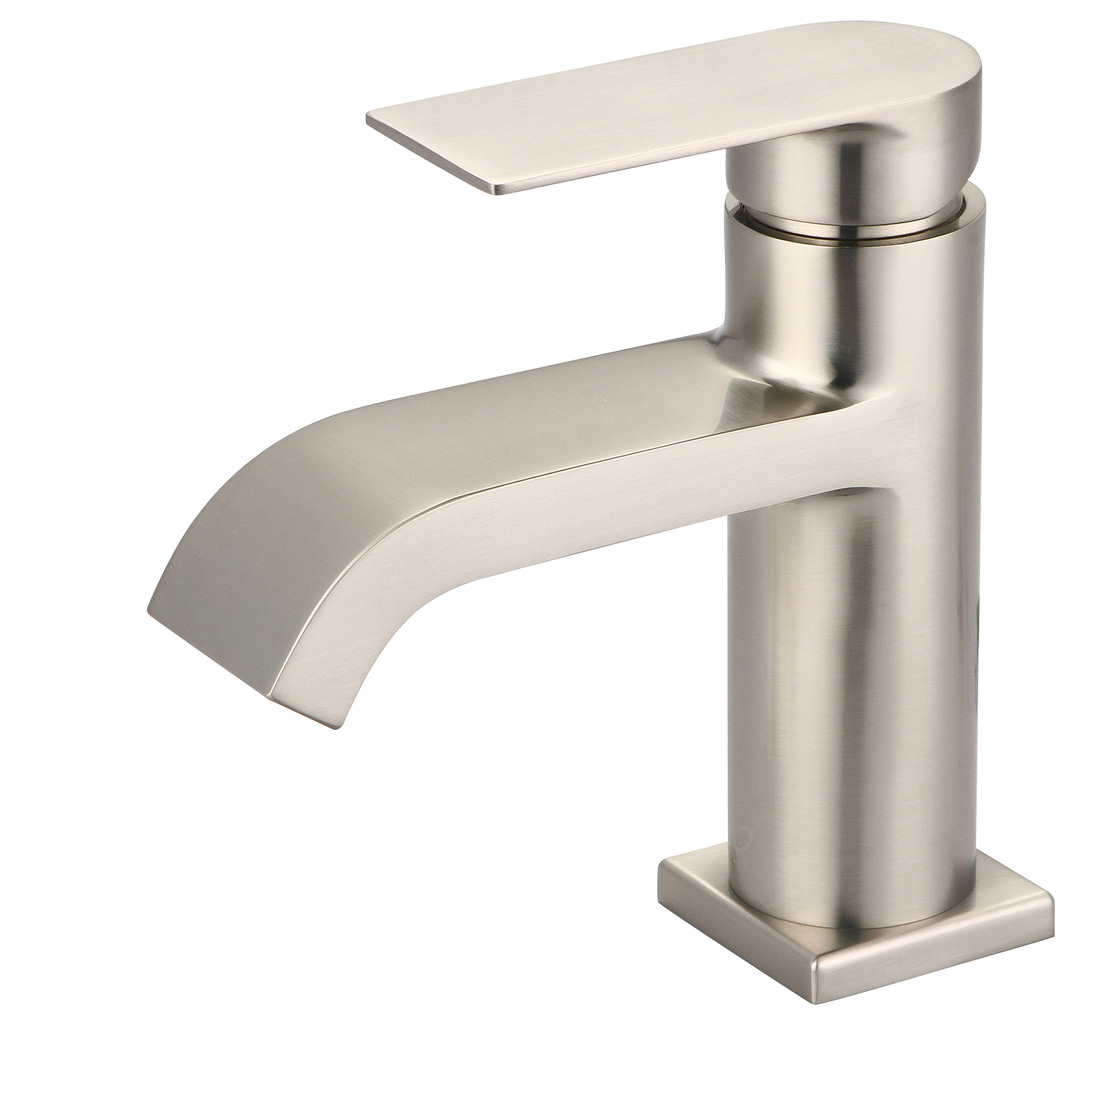 i4 Single Handle Bathroom Faucet Model #L-6093